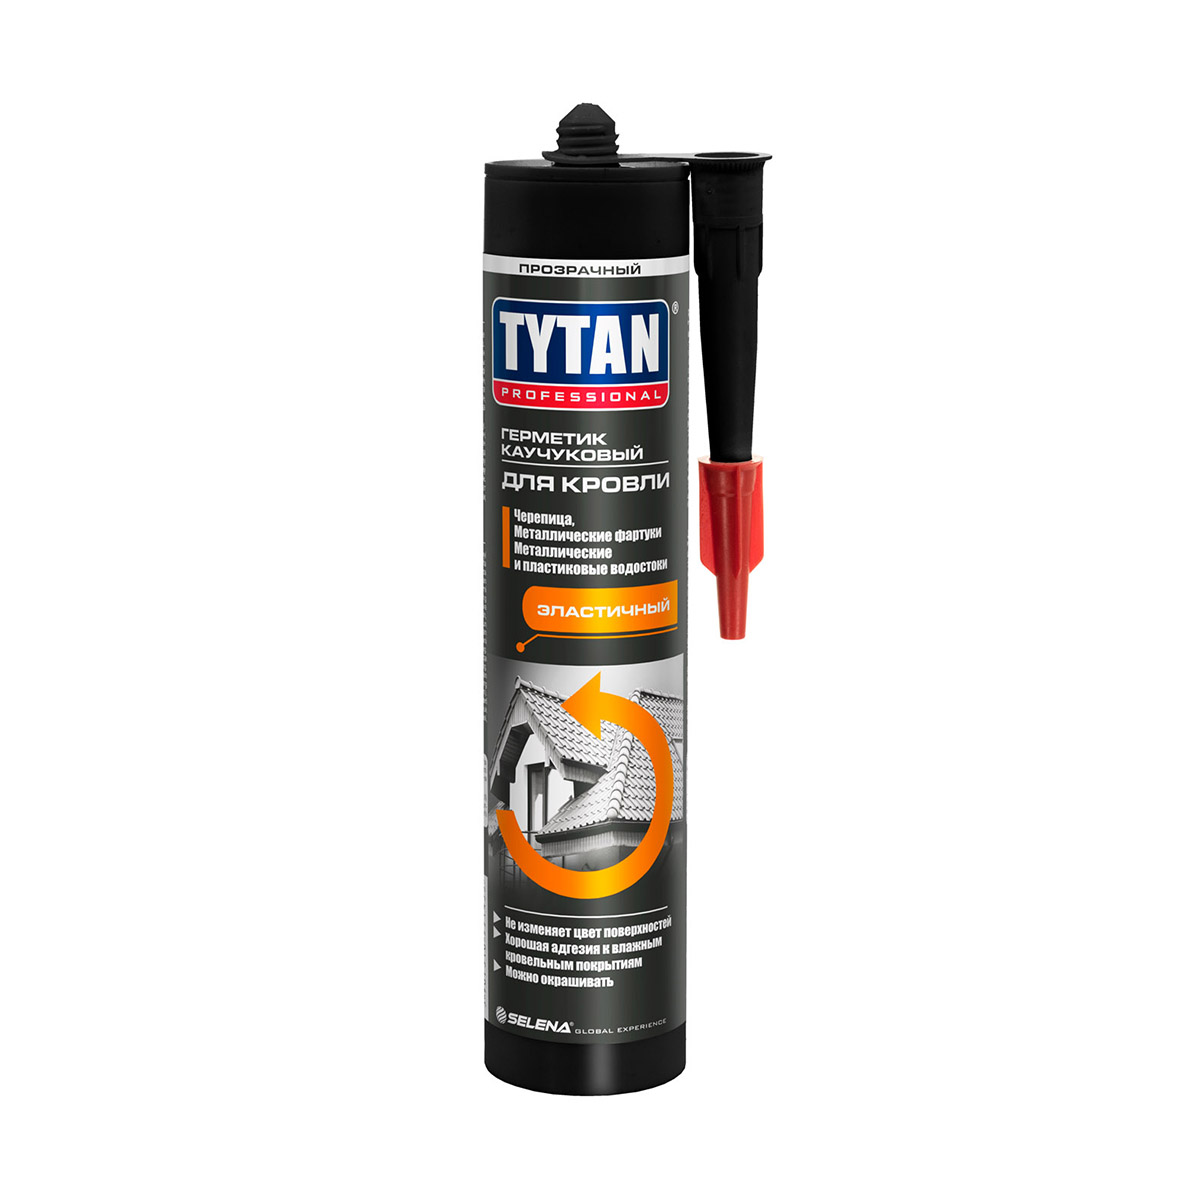 Герметик каучуковый Tytan Professional, для кровли, 310 мл, прозрачный герметик силиконовый для кровли и водостоков tytan professional 310 мл белый